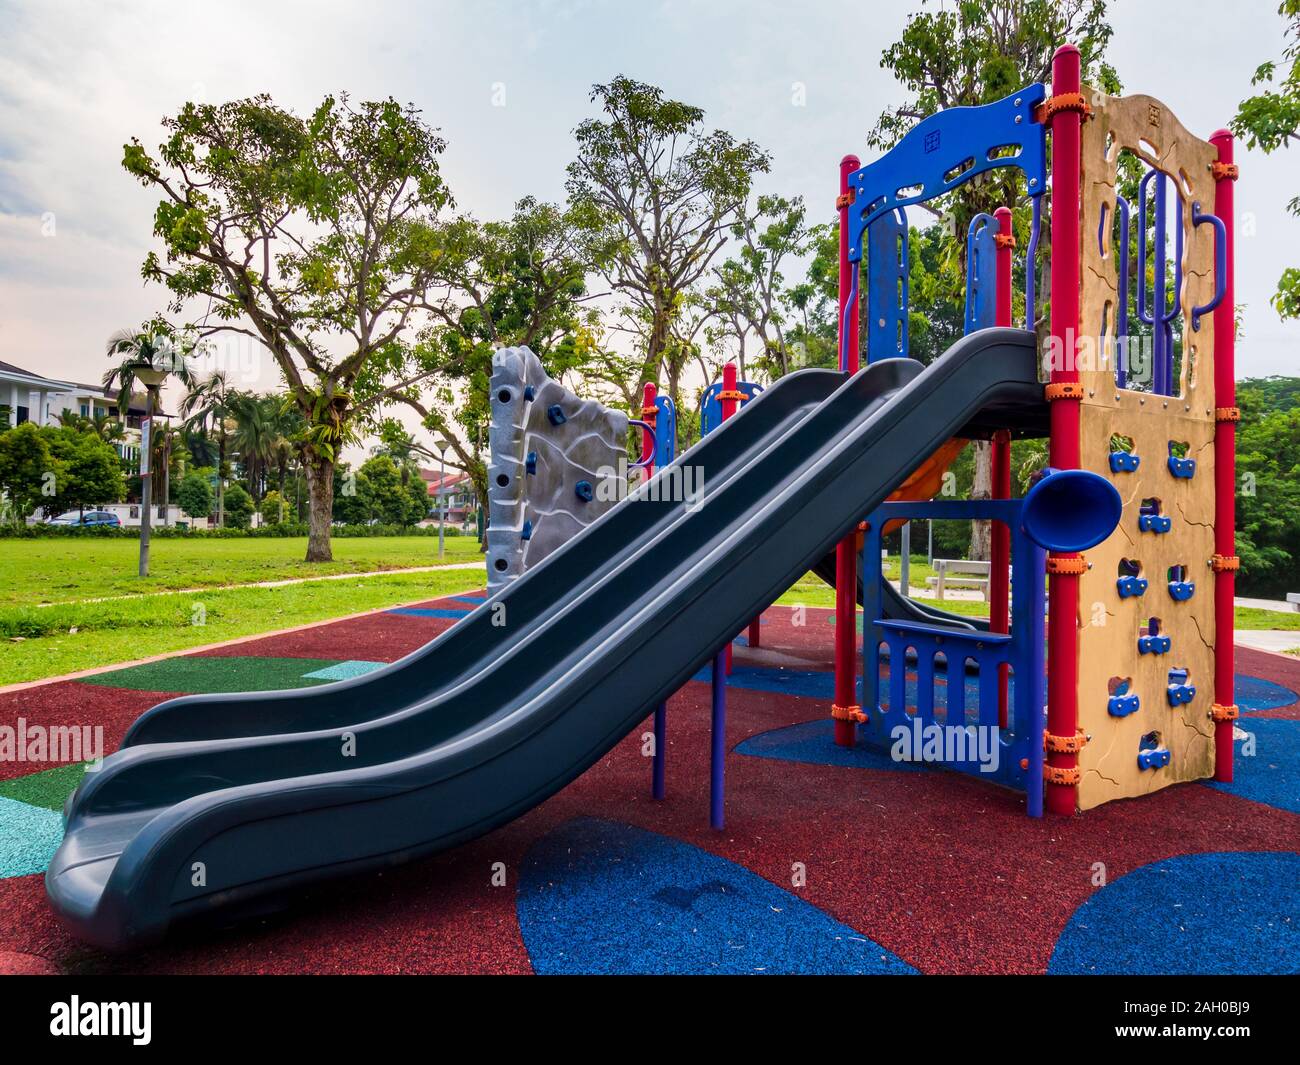 Kinderspielplatz Folie und anderen Spielgeräten in einem öffentlichen Park in der Nähe einer Wohnsiedlung Stockfoto